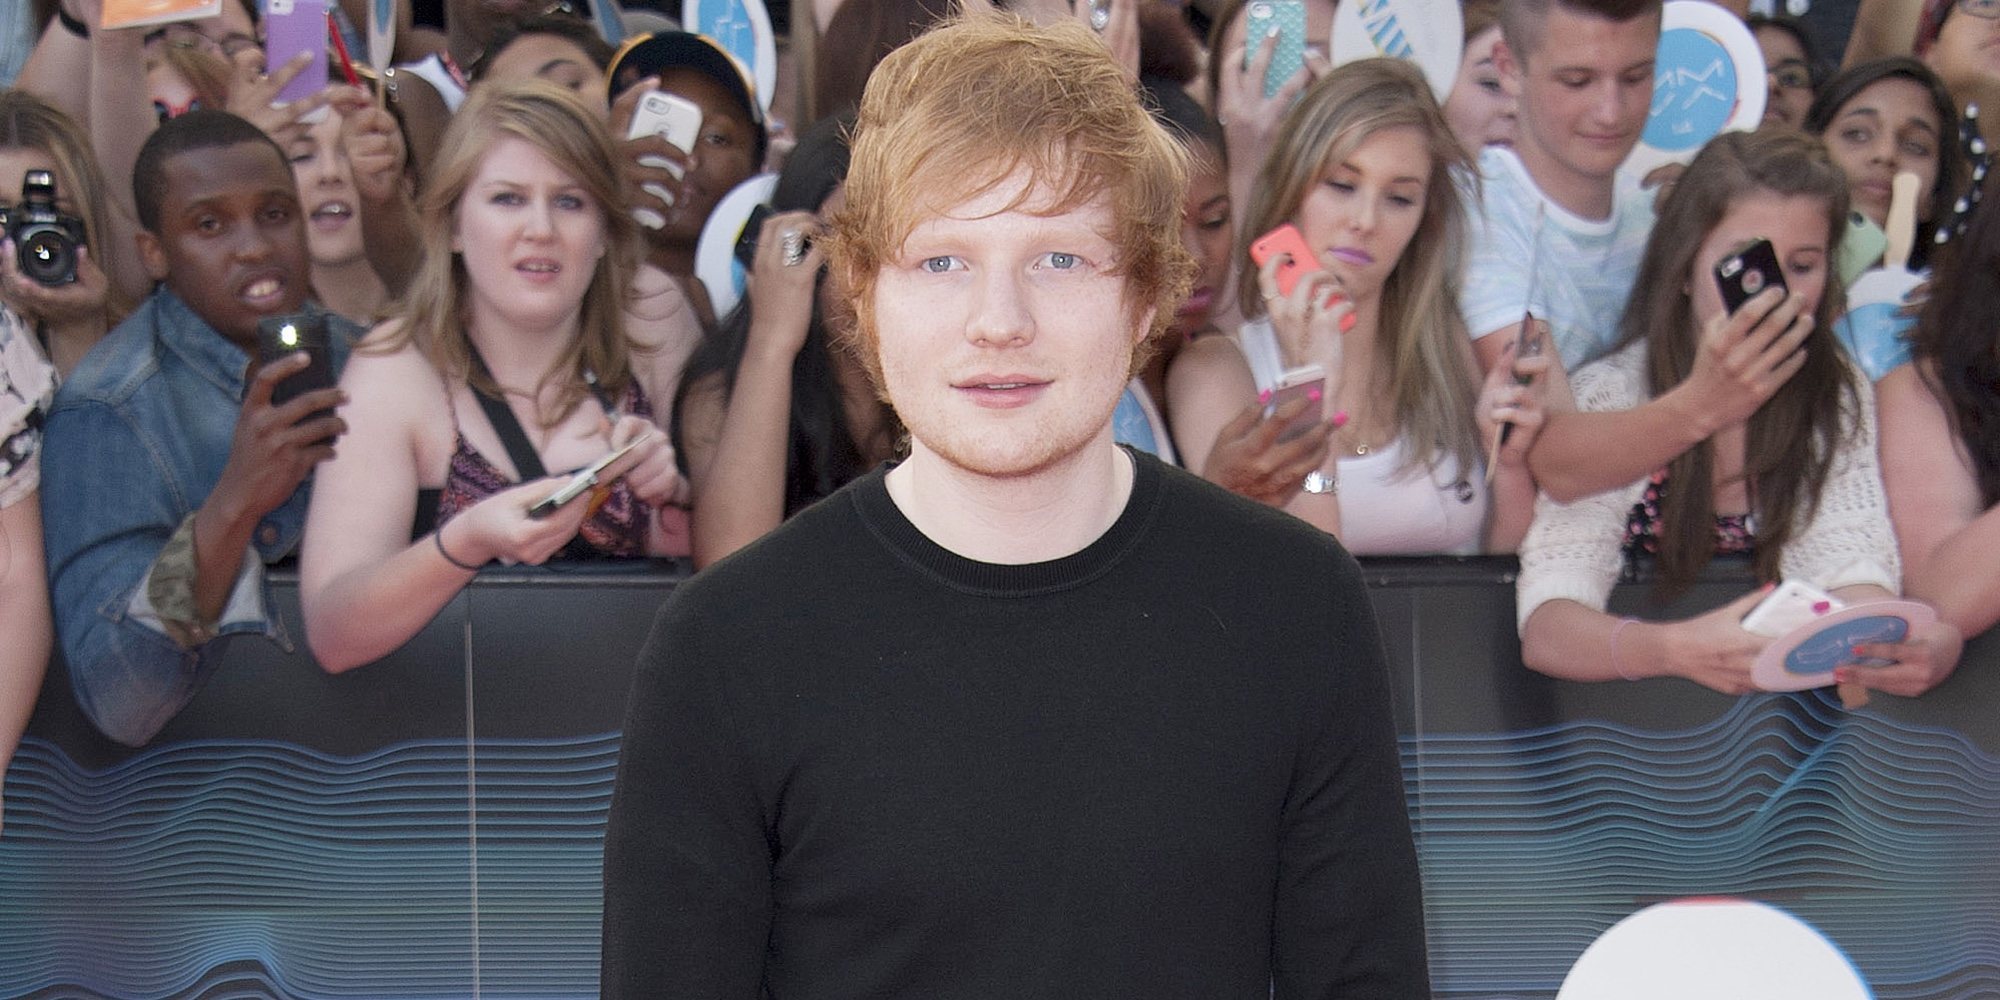 Ed Sheeran celebra el lanzamiento de su disco 'No.6 Collaborations Project' con un espacio inmersivo en Madrid